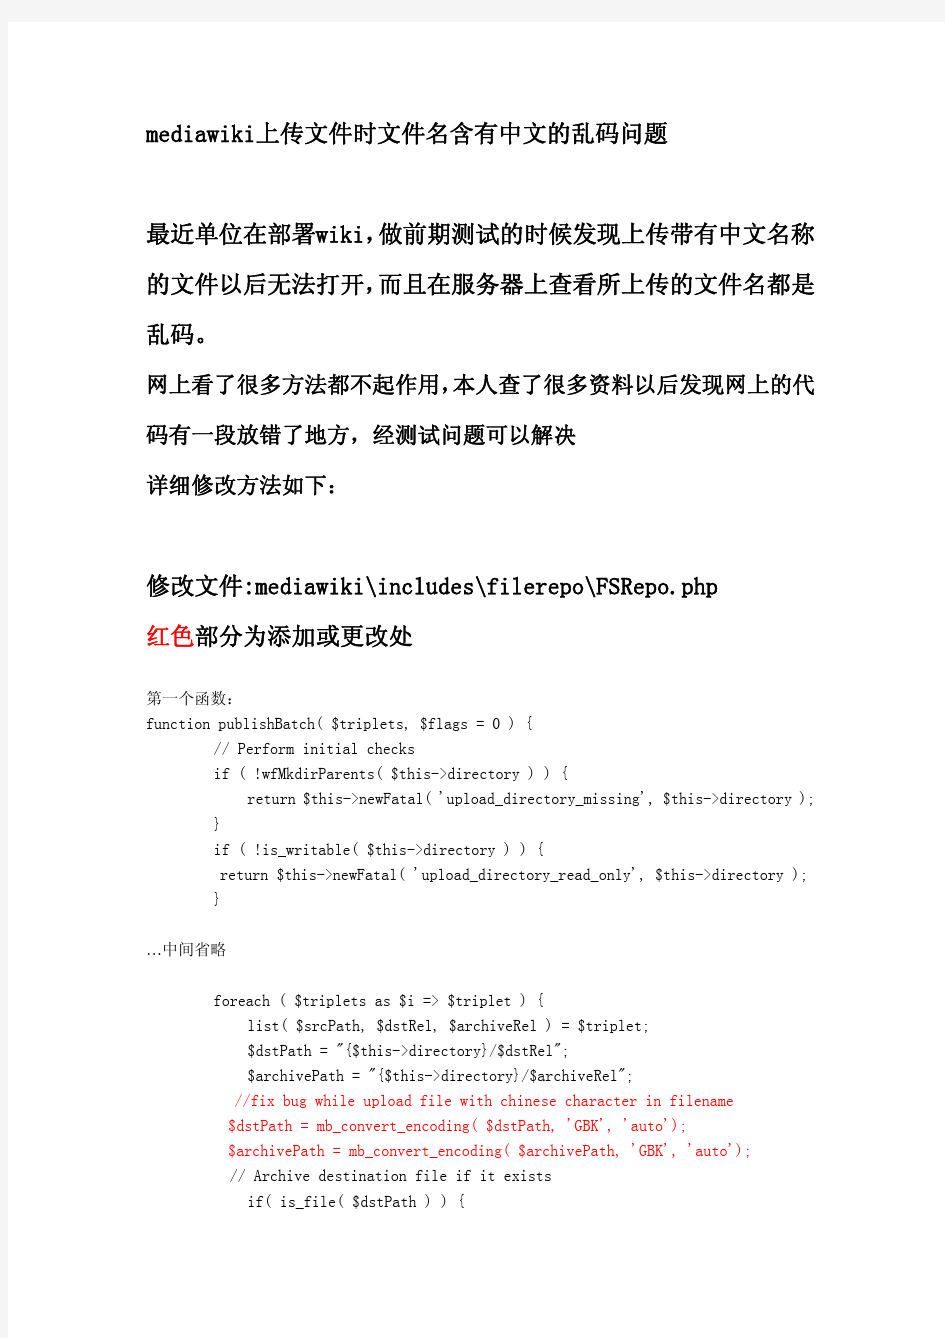 mediawiki上传文件时文件名含有中文的乱码问题